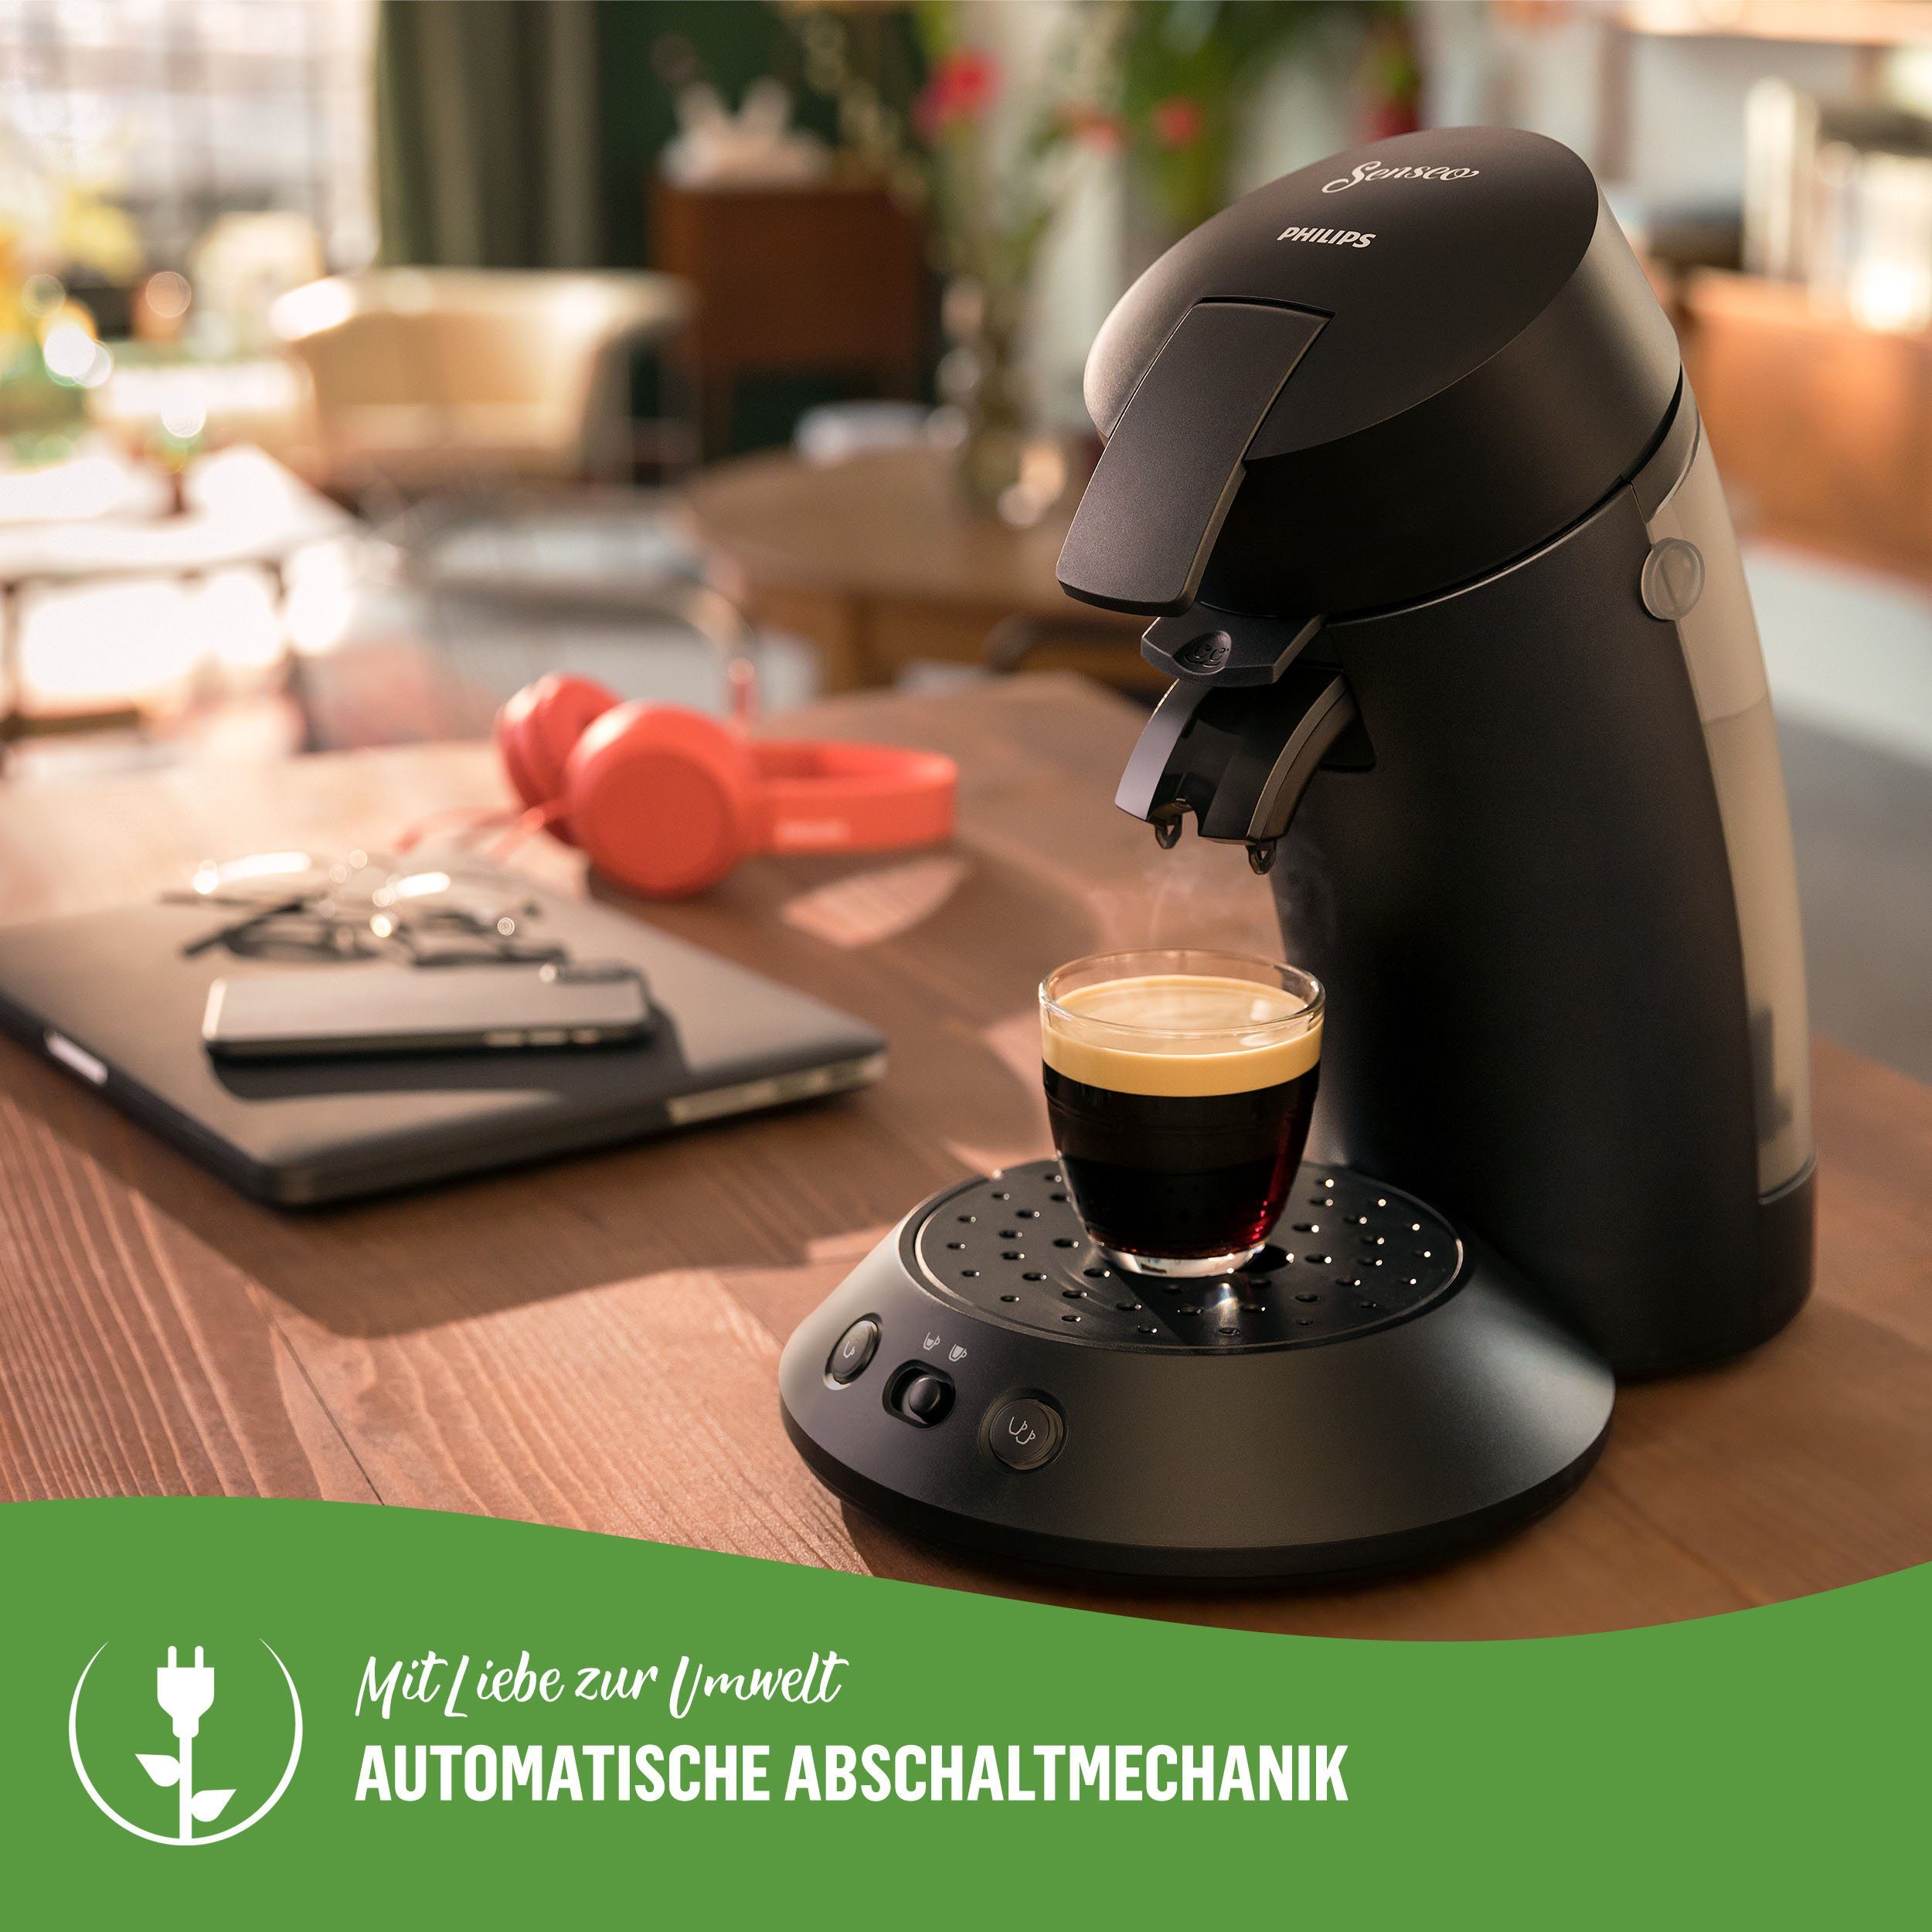 Philips Senseo Kaffeepadmaschine kaufen und Senseo Plastik*, 80% € Original Pads max.33 bis aus 100 recyceltem Plus CSA210/22, zurückerhalten Eco